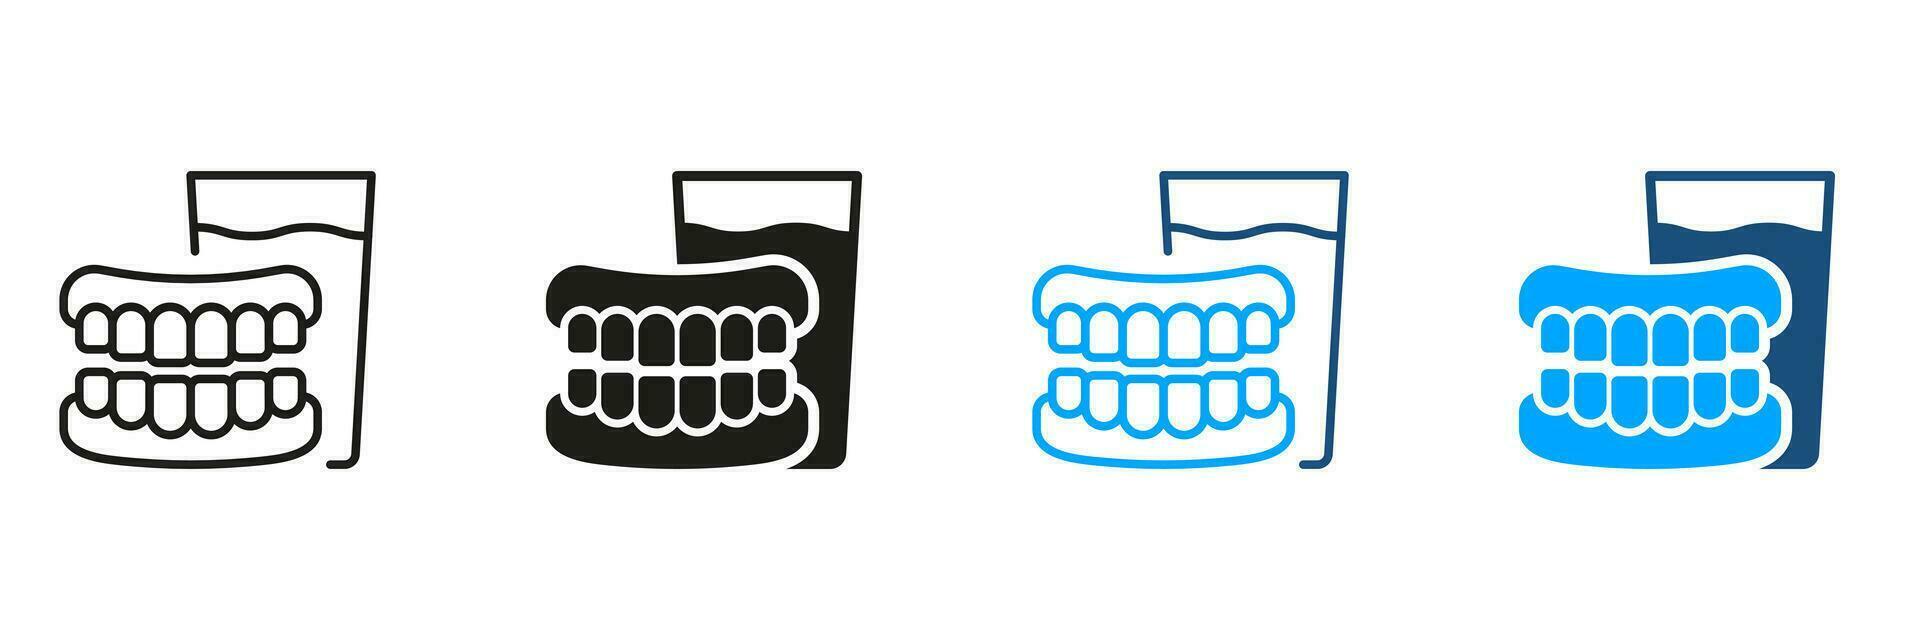 https://static.vecteezy.com/ti/vecteur-libre/p1/27818197-dentier-avec-verre-de-l-eau-humain-faux-dent-pictogramme-artificiel-dent-dentaire-traitement-symbole-collection-medical-dentaire-prothetique-silhouette-et-ligne-icone-ensemble-isole-vecteur-illustration-vectoriel.jpg